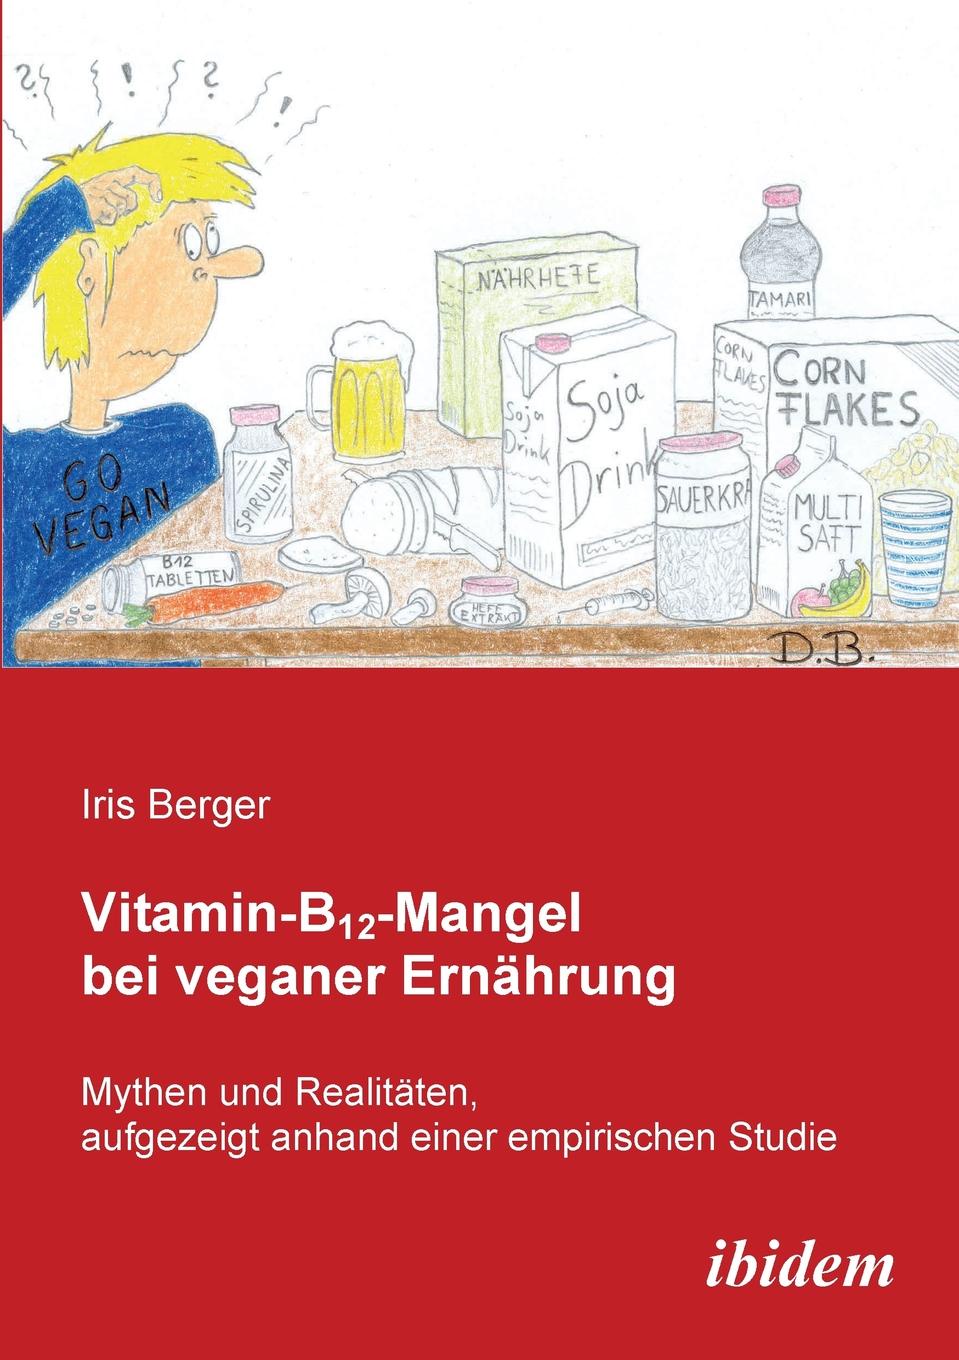 Iris Berger Vitamin-B12-Mangel bei veganer Ernahrung. Mythen und Realitaten, aufgezeigt anhand einer empirischen Studie